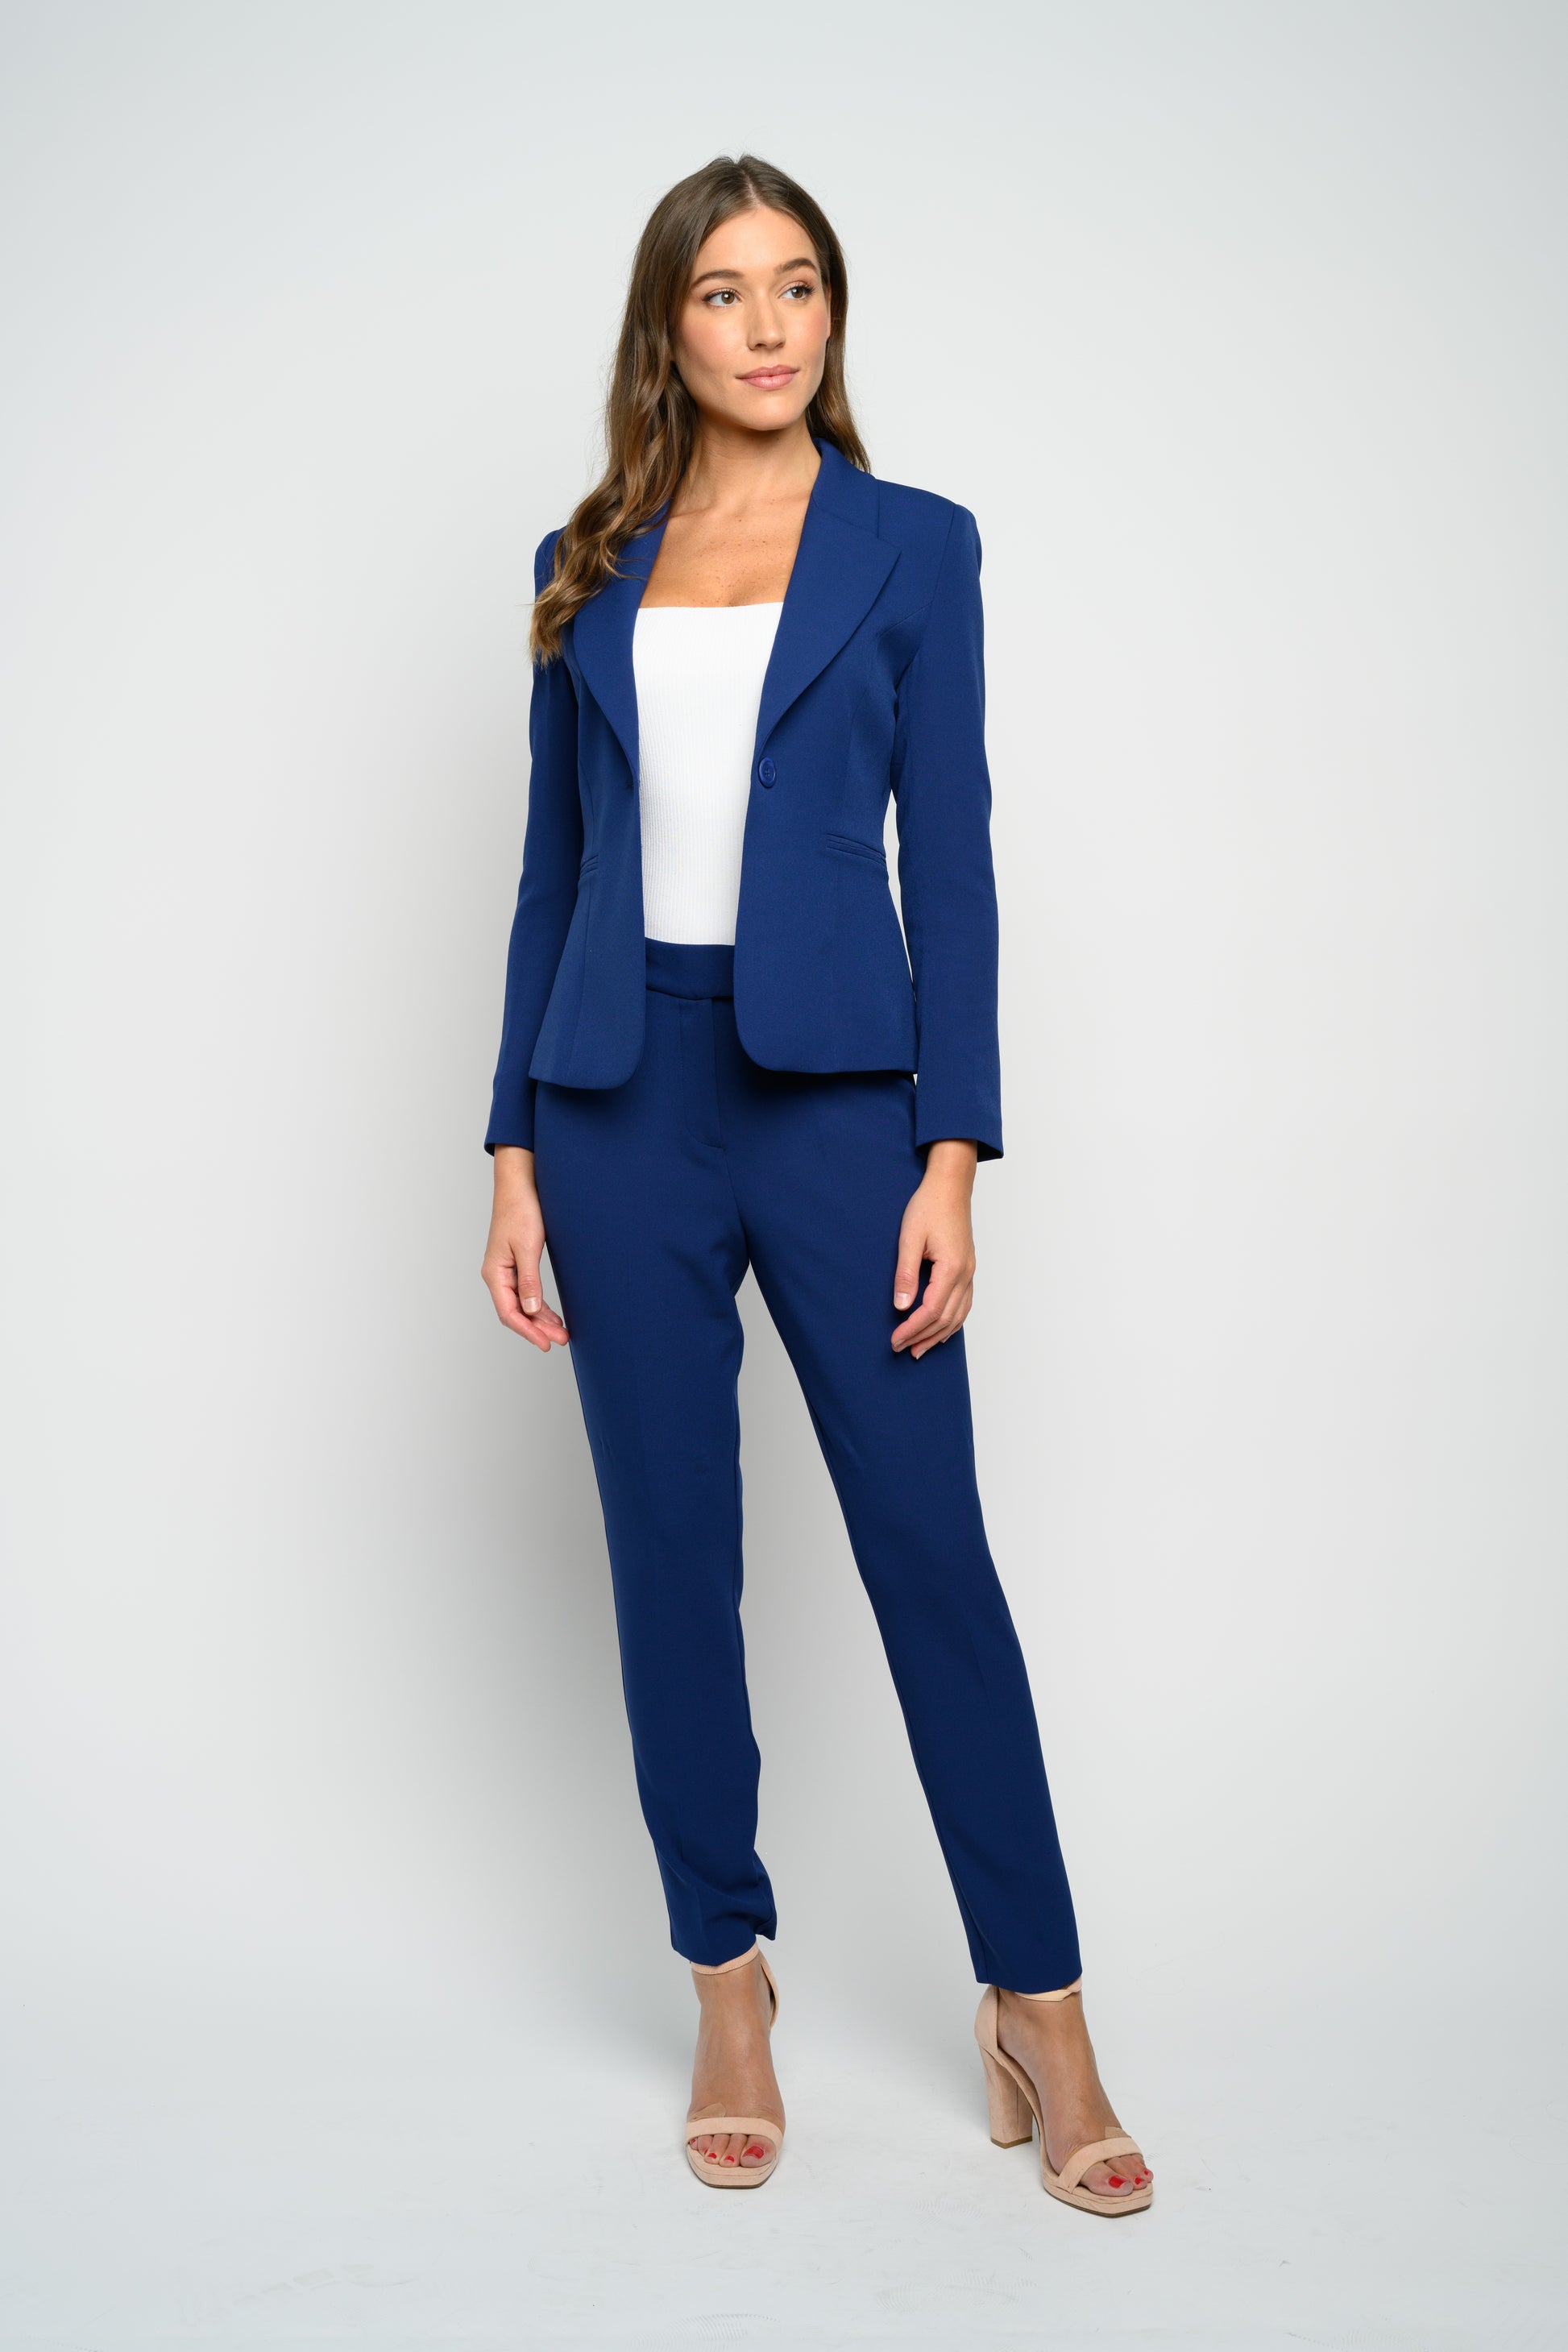 Royal Blue Pantsuit Formal for Tall Women, Blue 3-piece Pantsuit